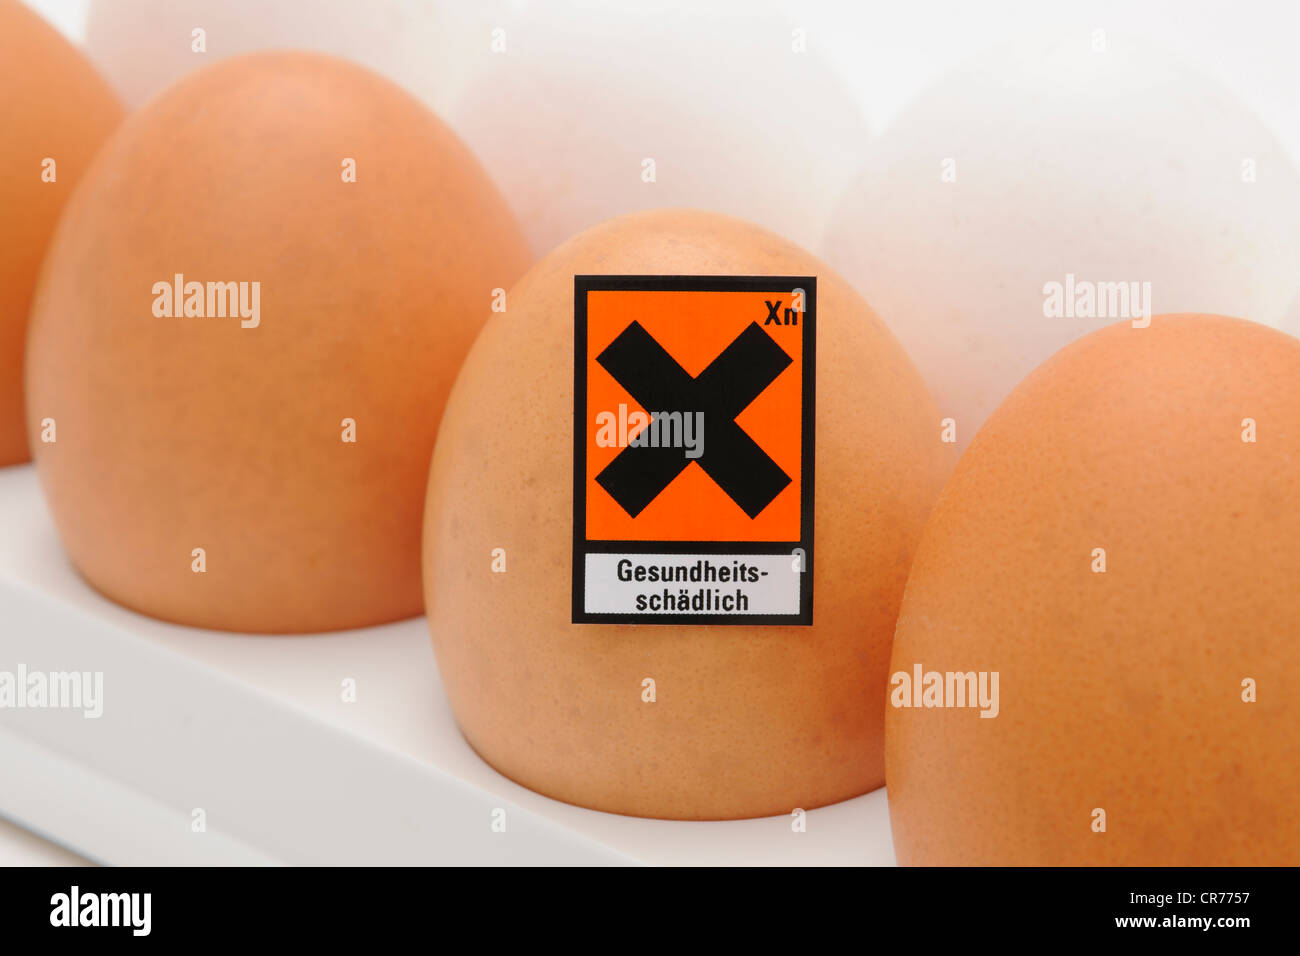 Huevos de gallina con símbolo de peligro "Gesundheitsschaedlich', alemán "nocivo para la salud", imagen simbólica para huevos contaminados Foto de stock